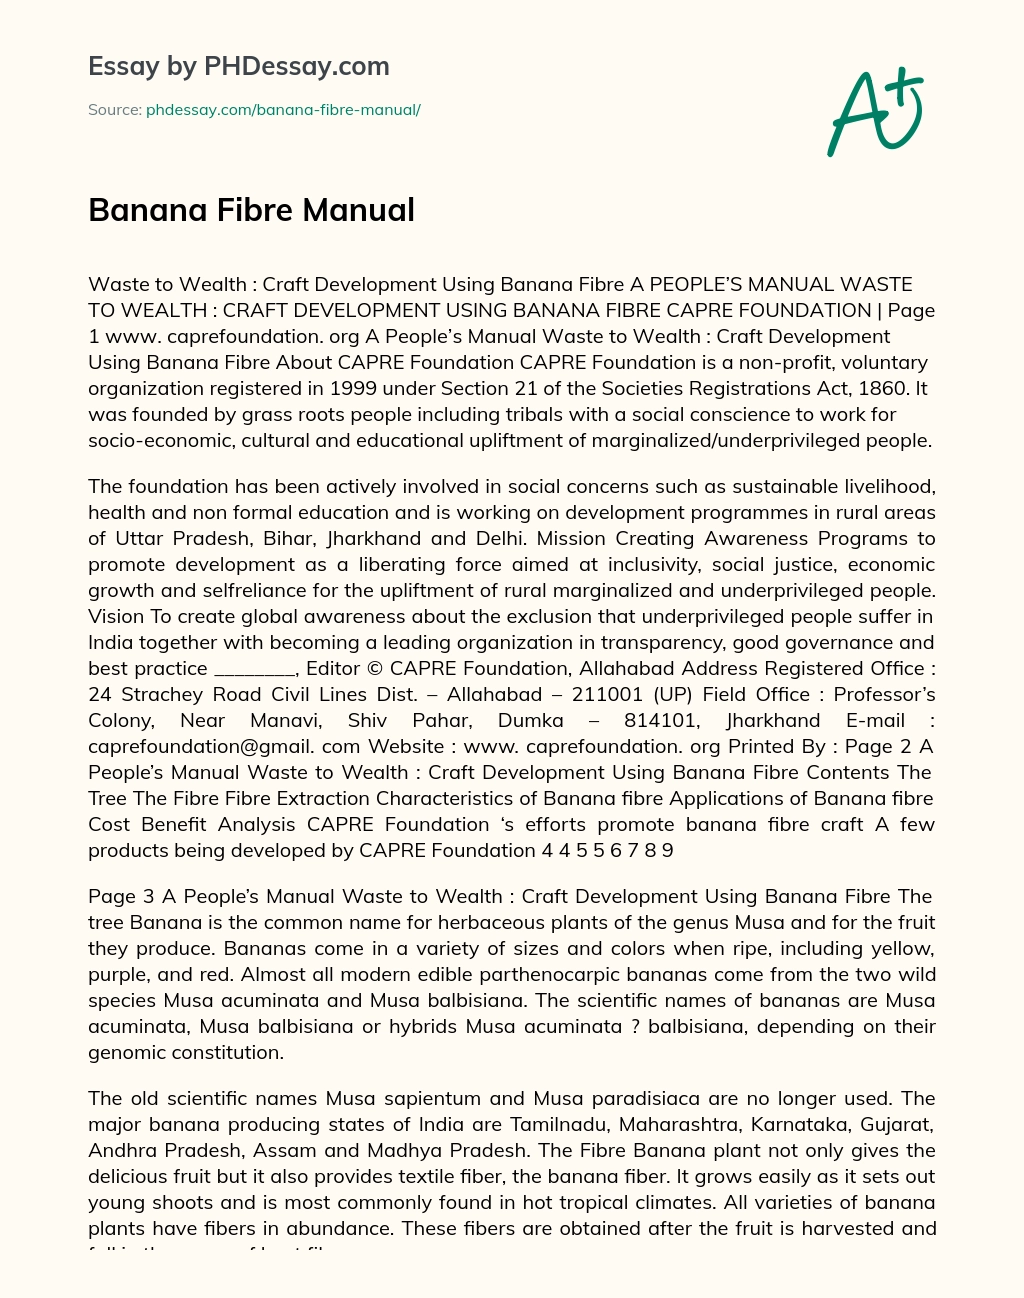 Banana Fibre Manual essay